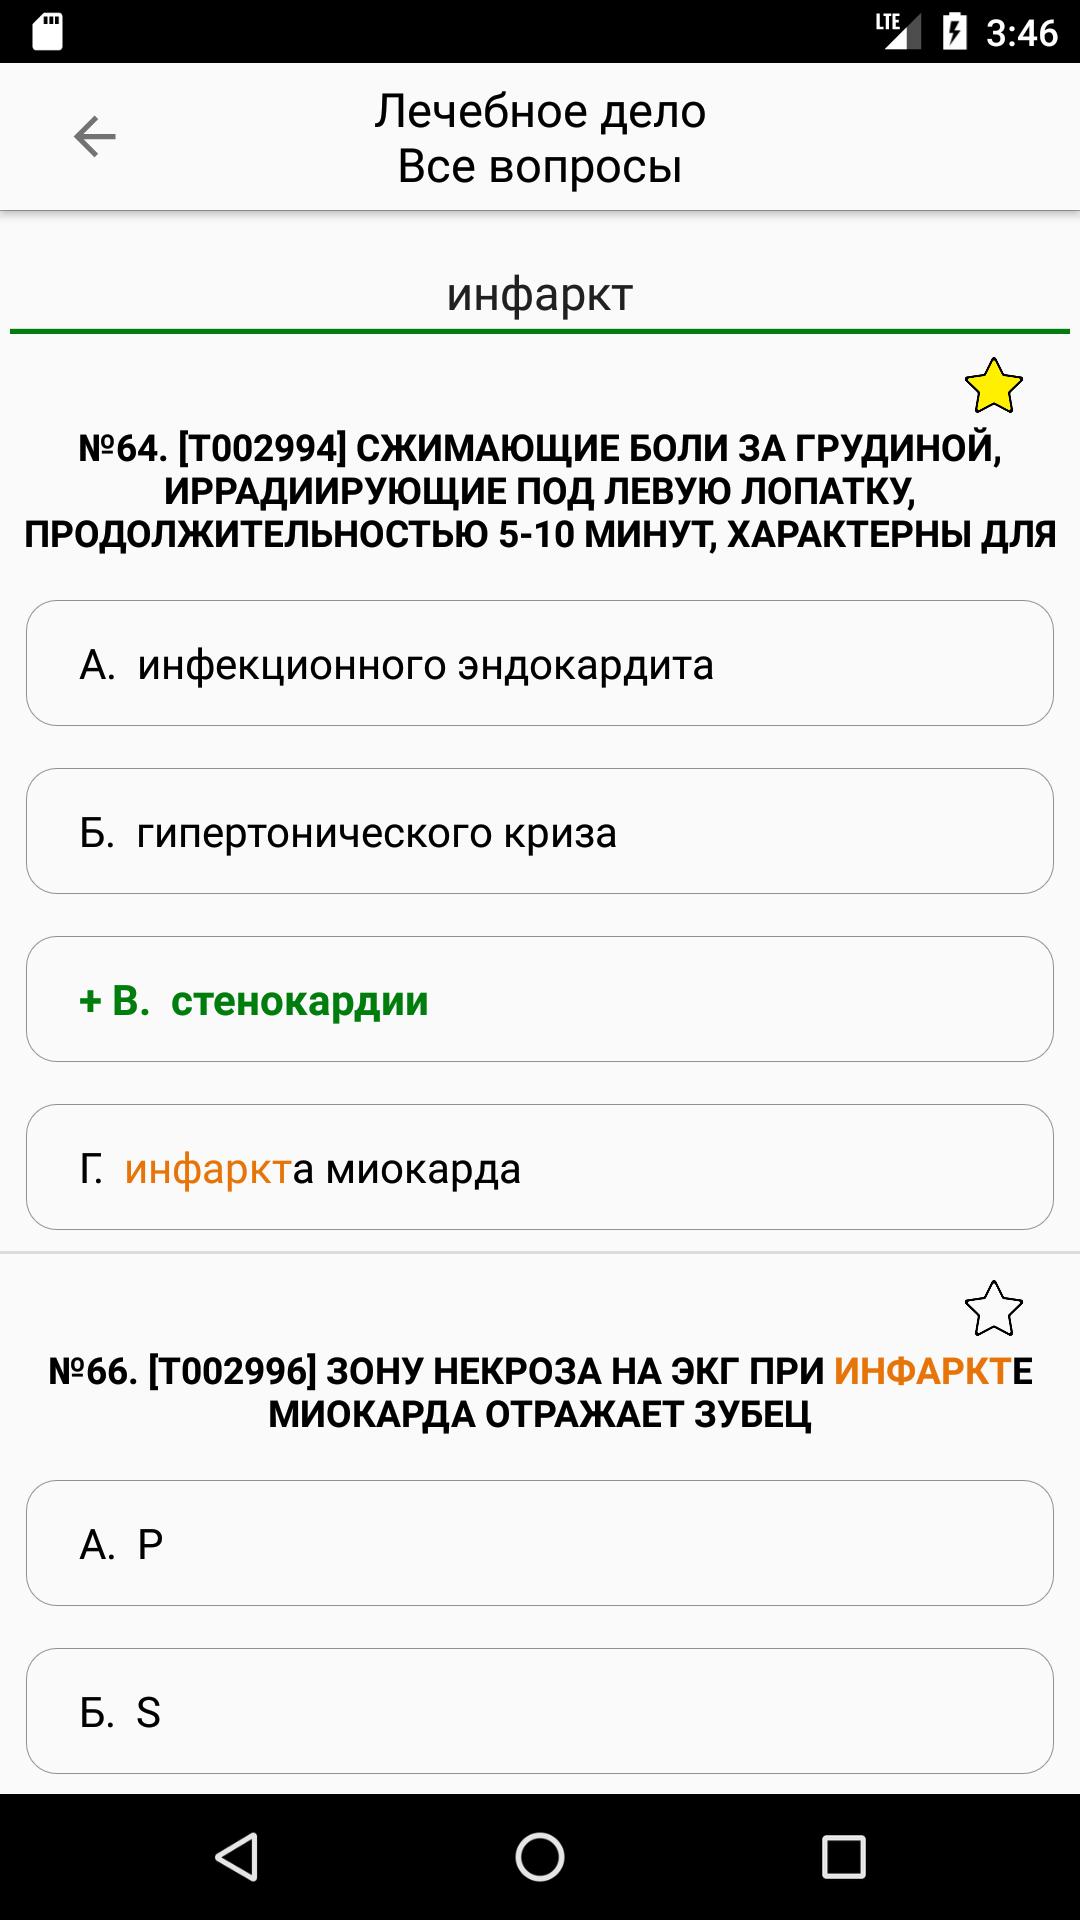 АККРЕДИТАЦИЯ СПО 2019 1.2.0 Screenshot 5